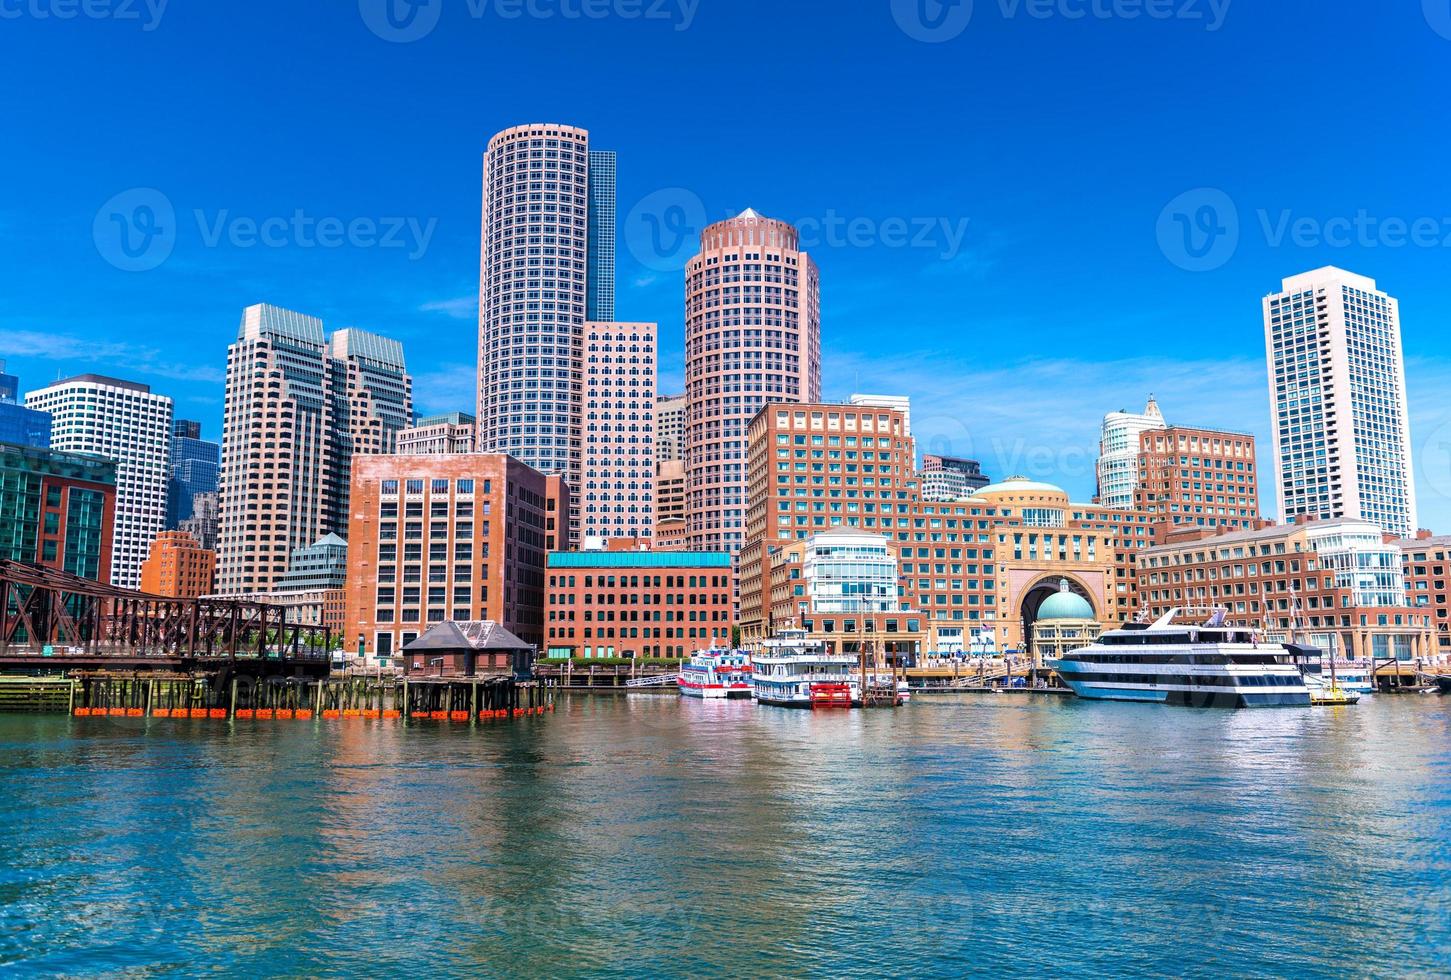 boston stadsgezicht weerspiegeld in water, wolkenkrabbers en kantoorgebouwen in het centrum, uitzicht vanaf de haven van boston, massachusetts, usa foto